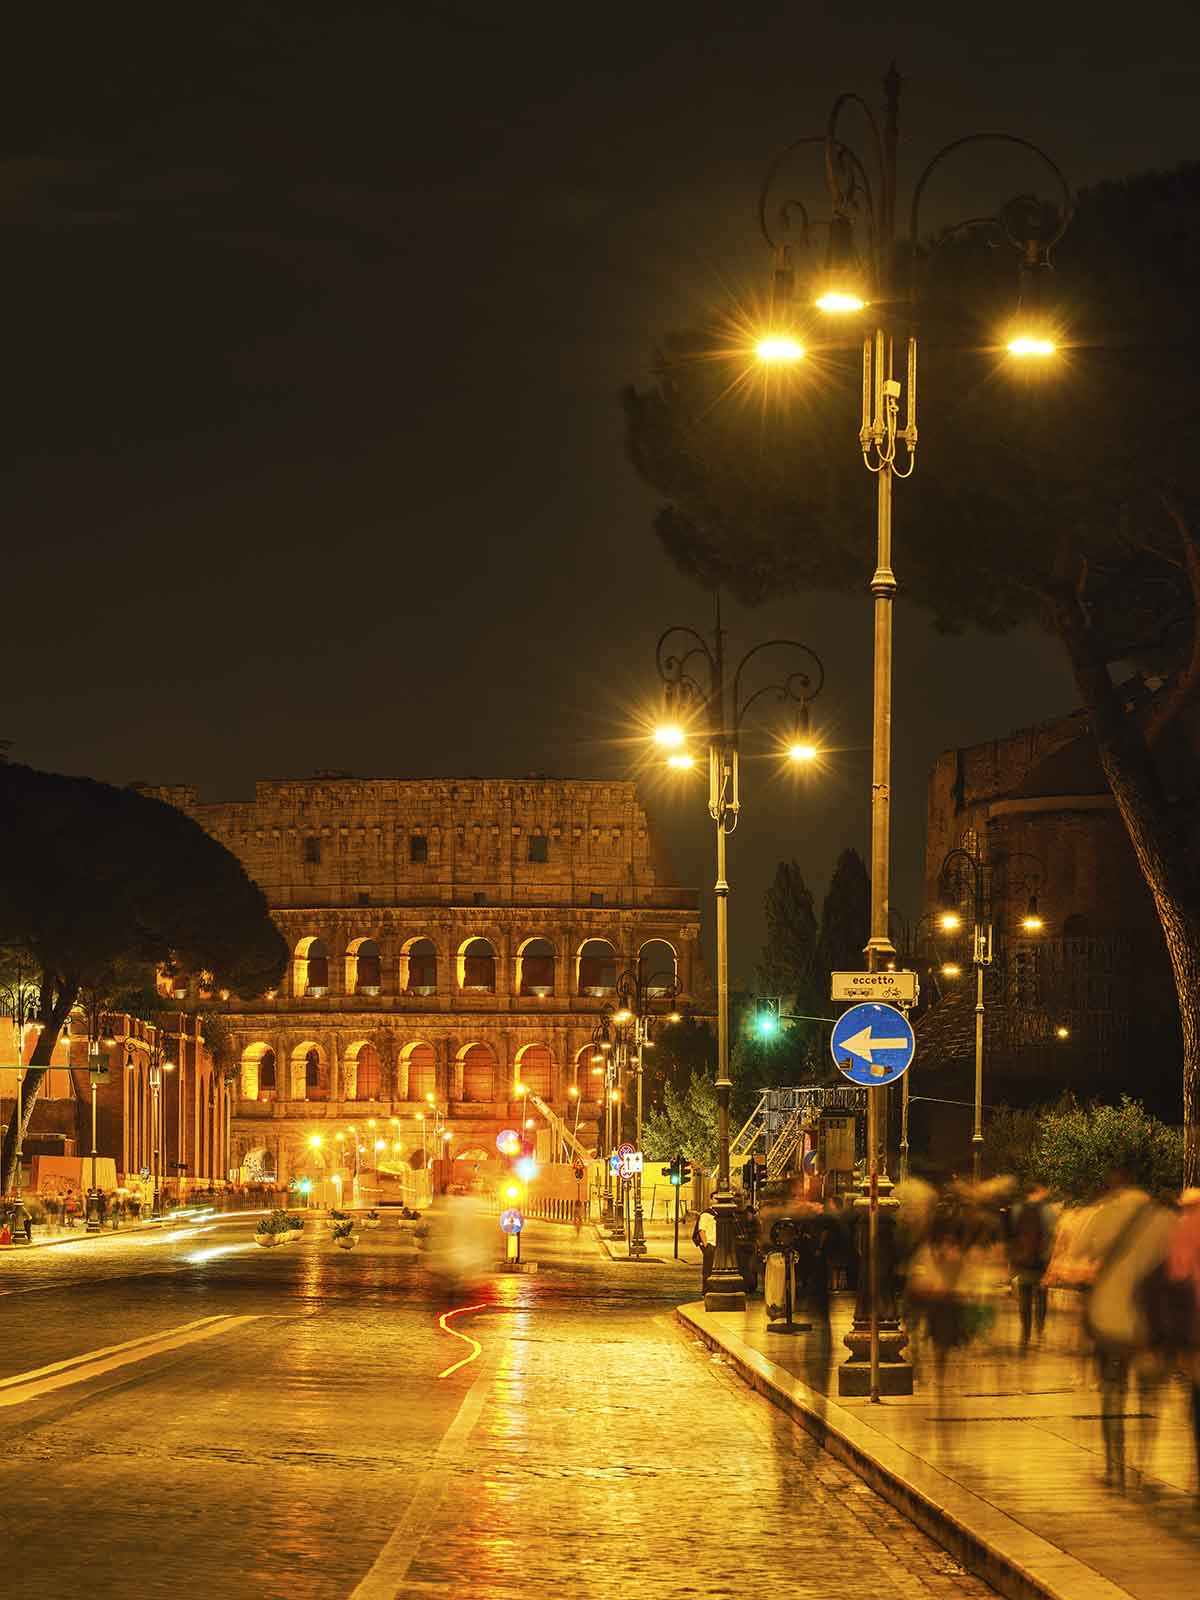 Rom – die ewige Stadt